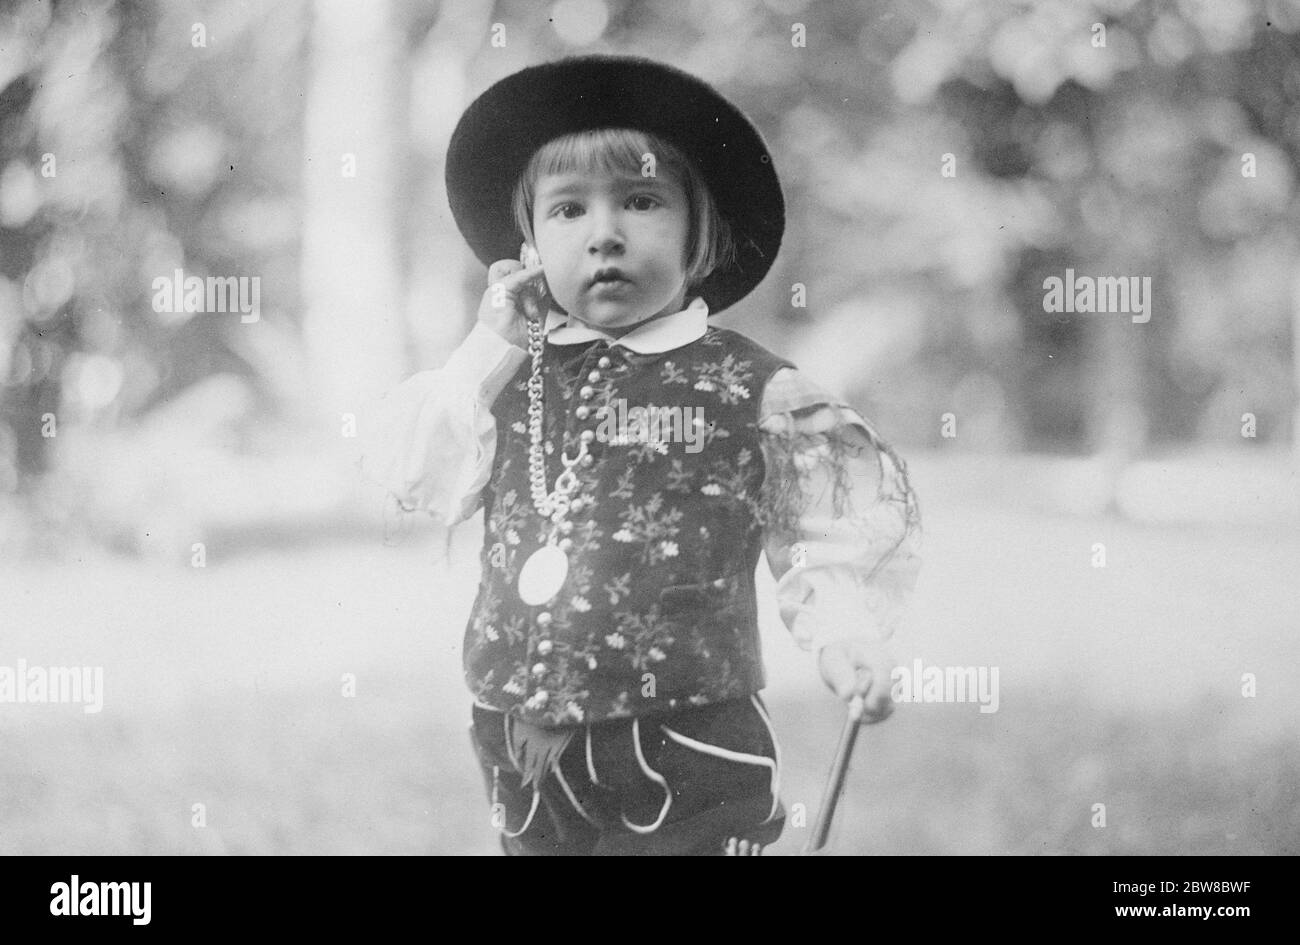 Nuova fotografia del giovane Principe ereditario di Jugoslavia il Principe ereditario di Jugoslavia , che ha recentemente celebrato il suo terzo compleanno , nel tipico costume di gala di un contadino sloveno 17 ottobre 1925 Foto Stock